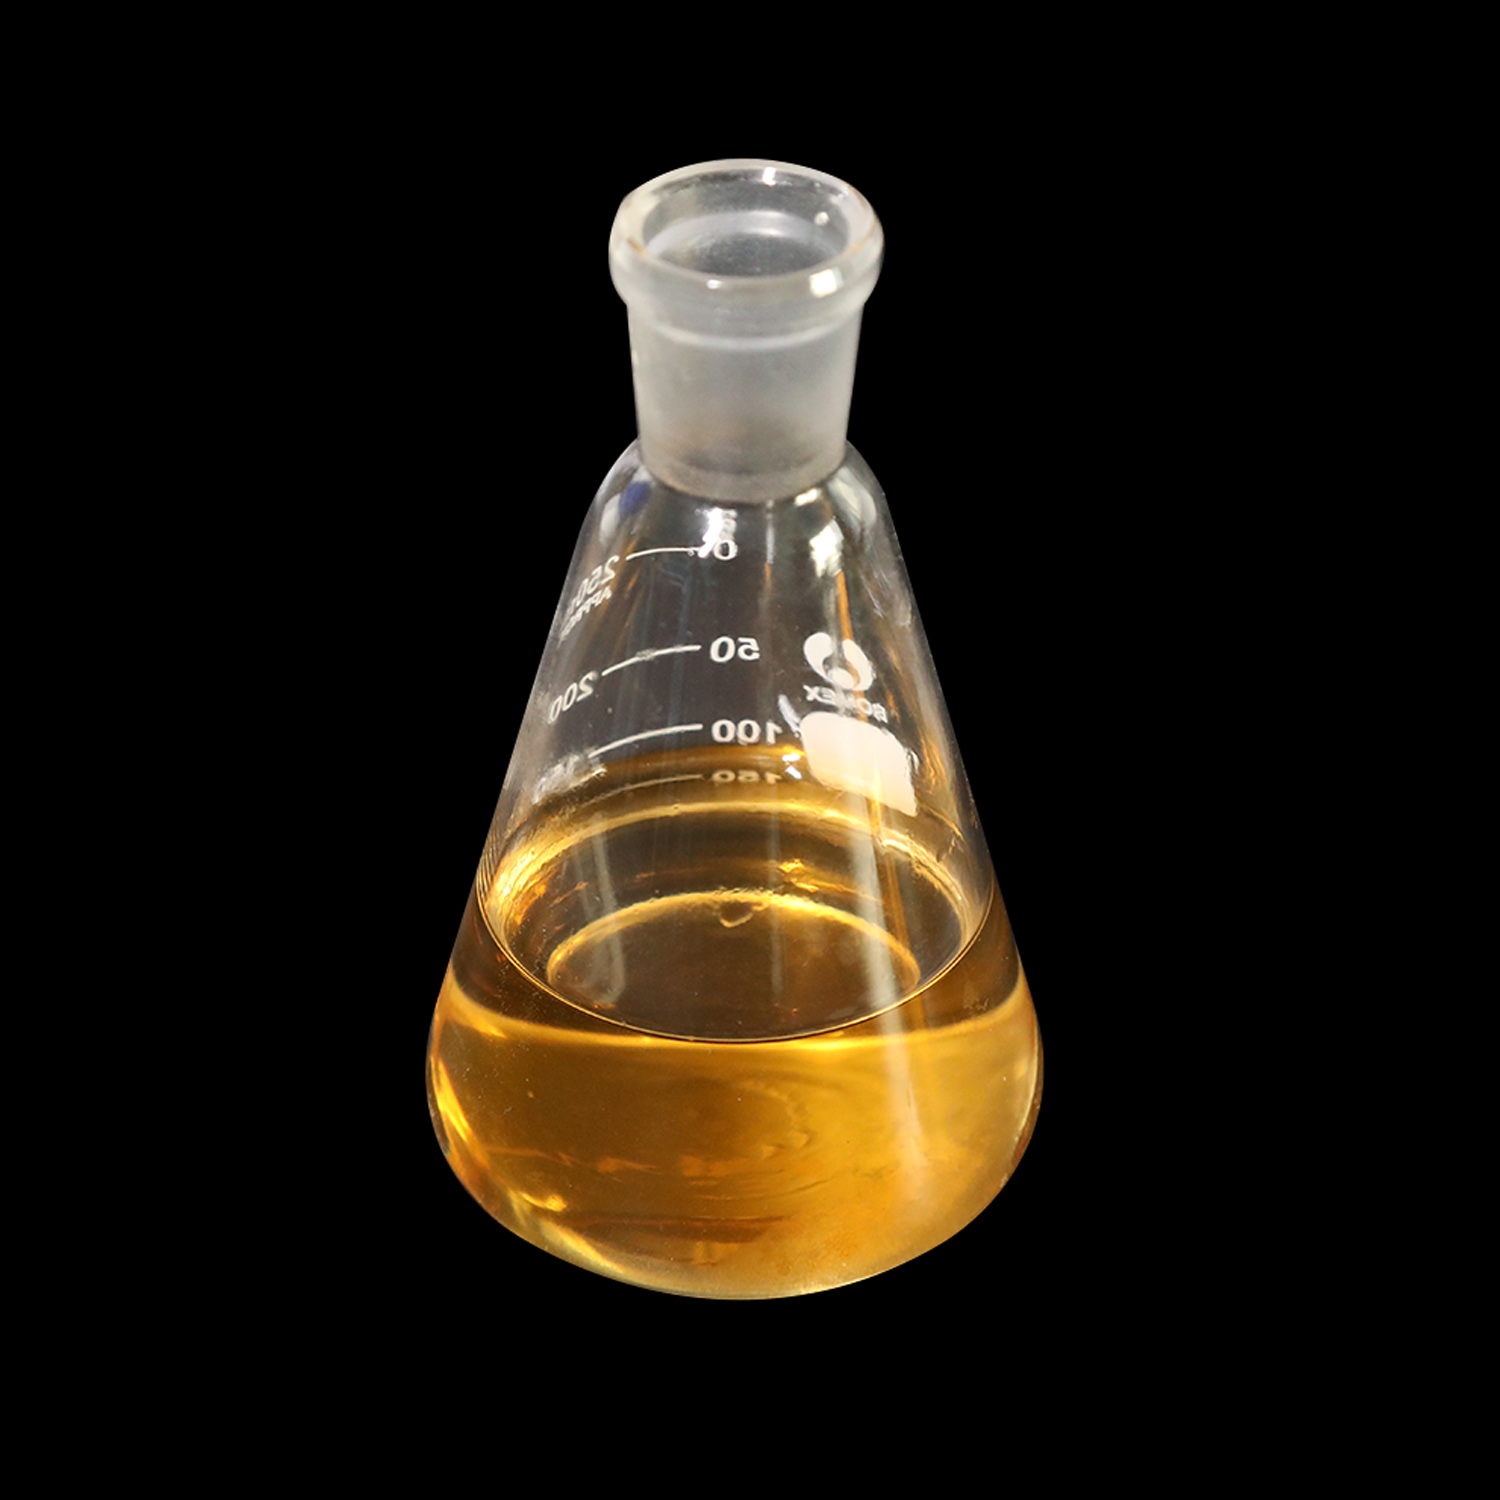 Заводская поставка Equipoise готовое и полуфабрикатное стероидное масло Boldenone Undecylenate 200 мг/мл стероидное масло Высокое качество, безопасная доставка